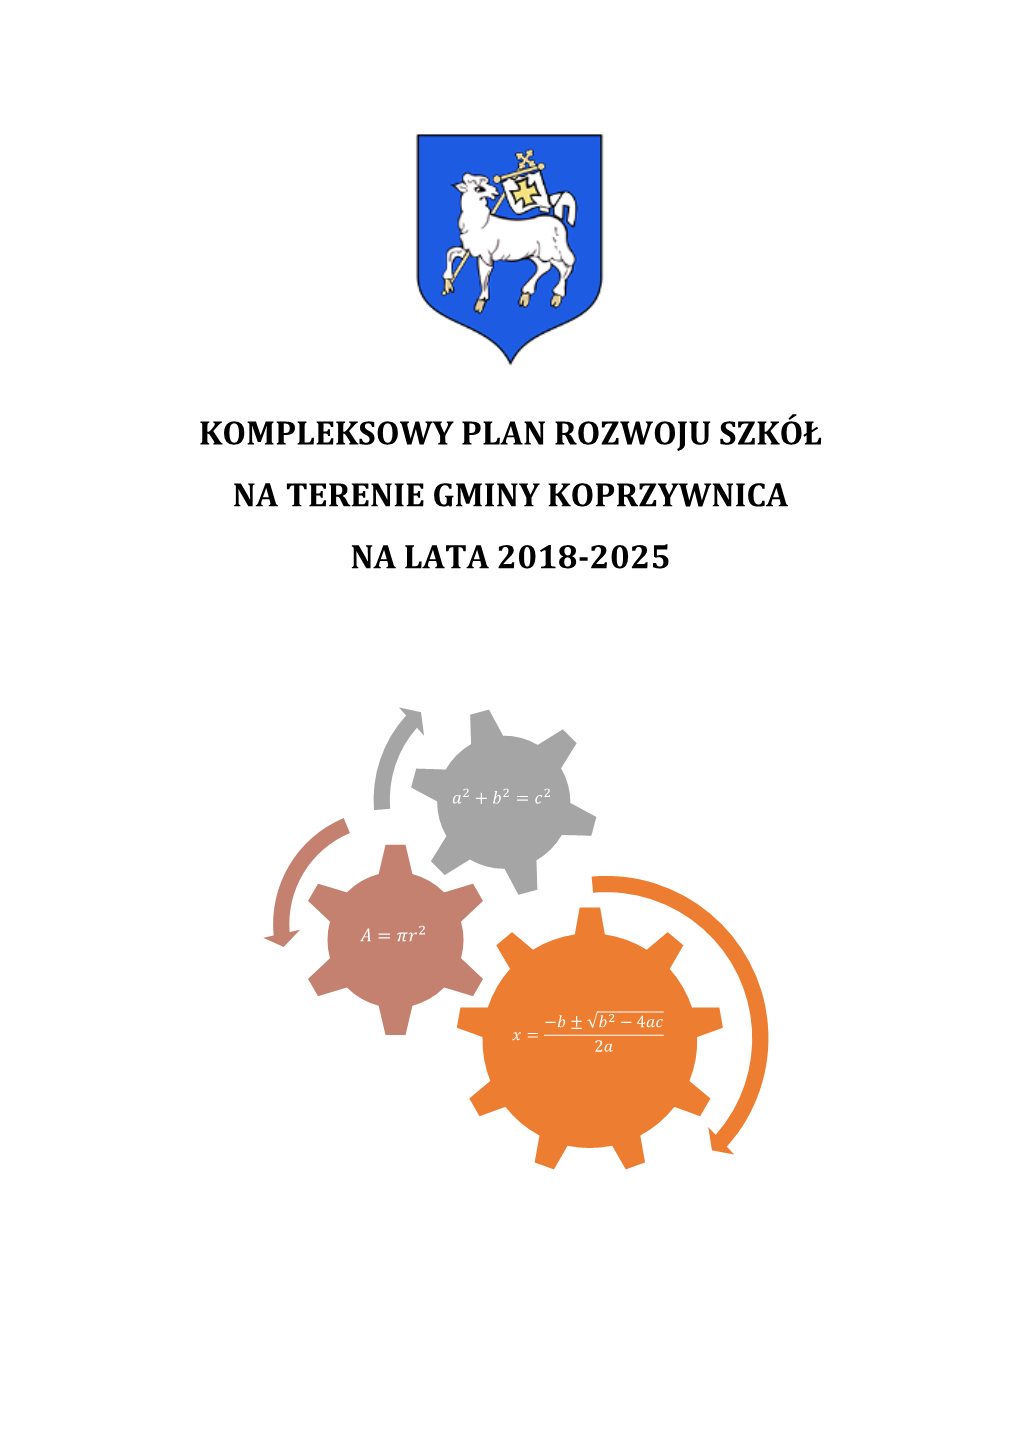 Kompleksowy Plan Rozwoju Szkół Na Terenie Gminy Koprzywnica Na Lata 2018-2025